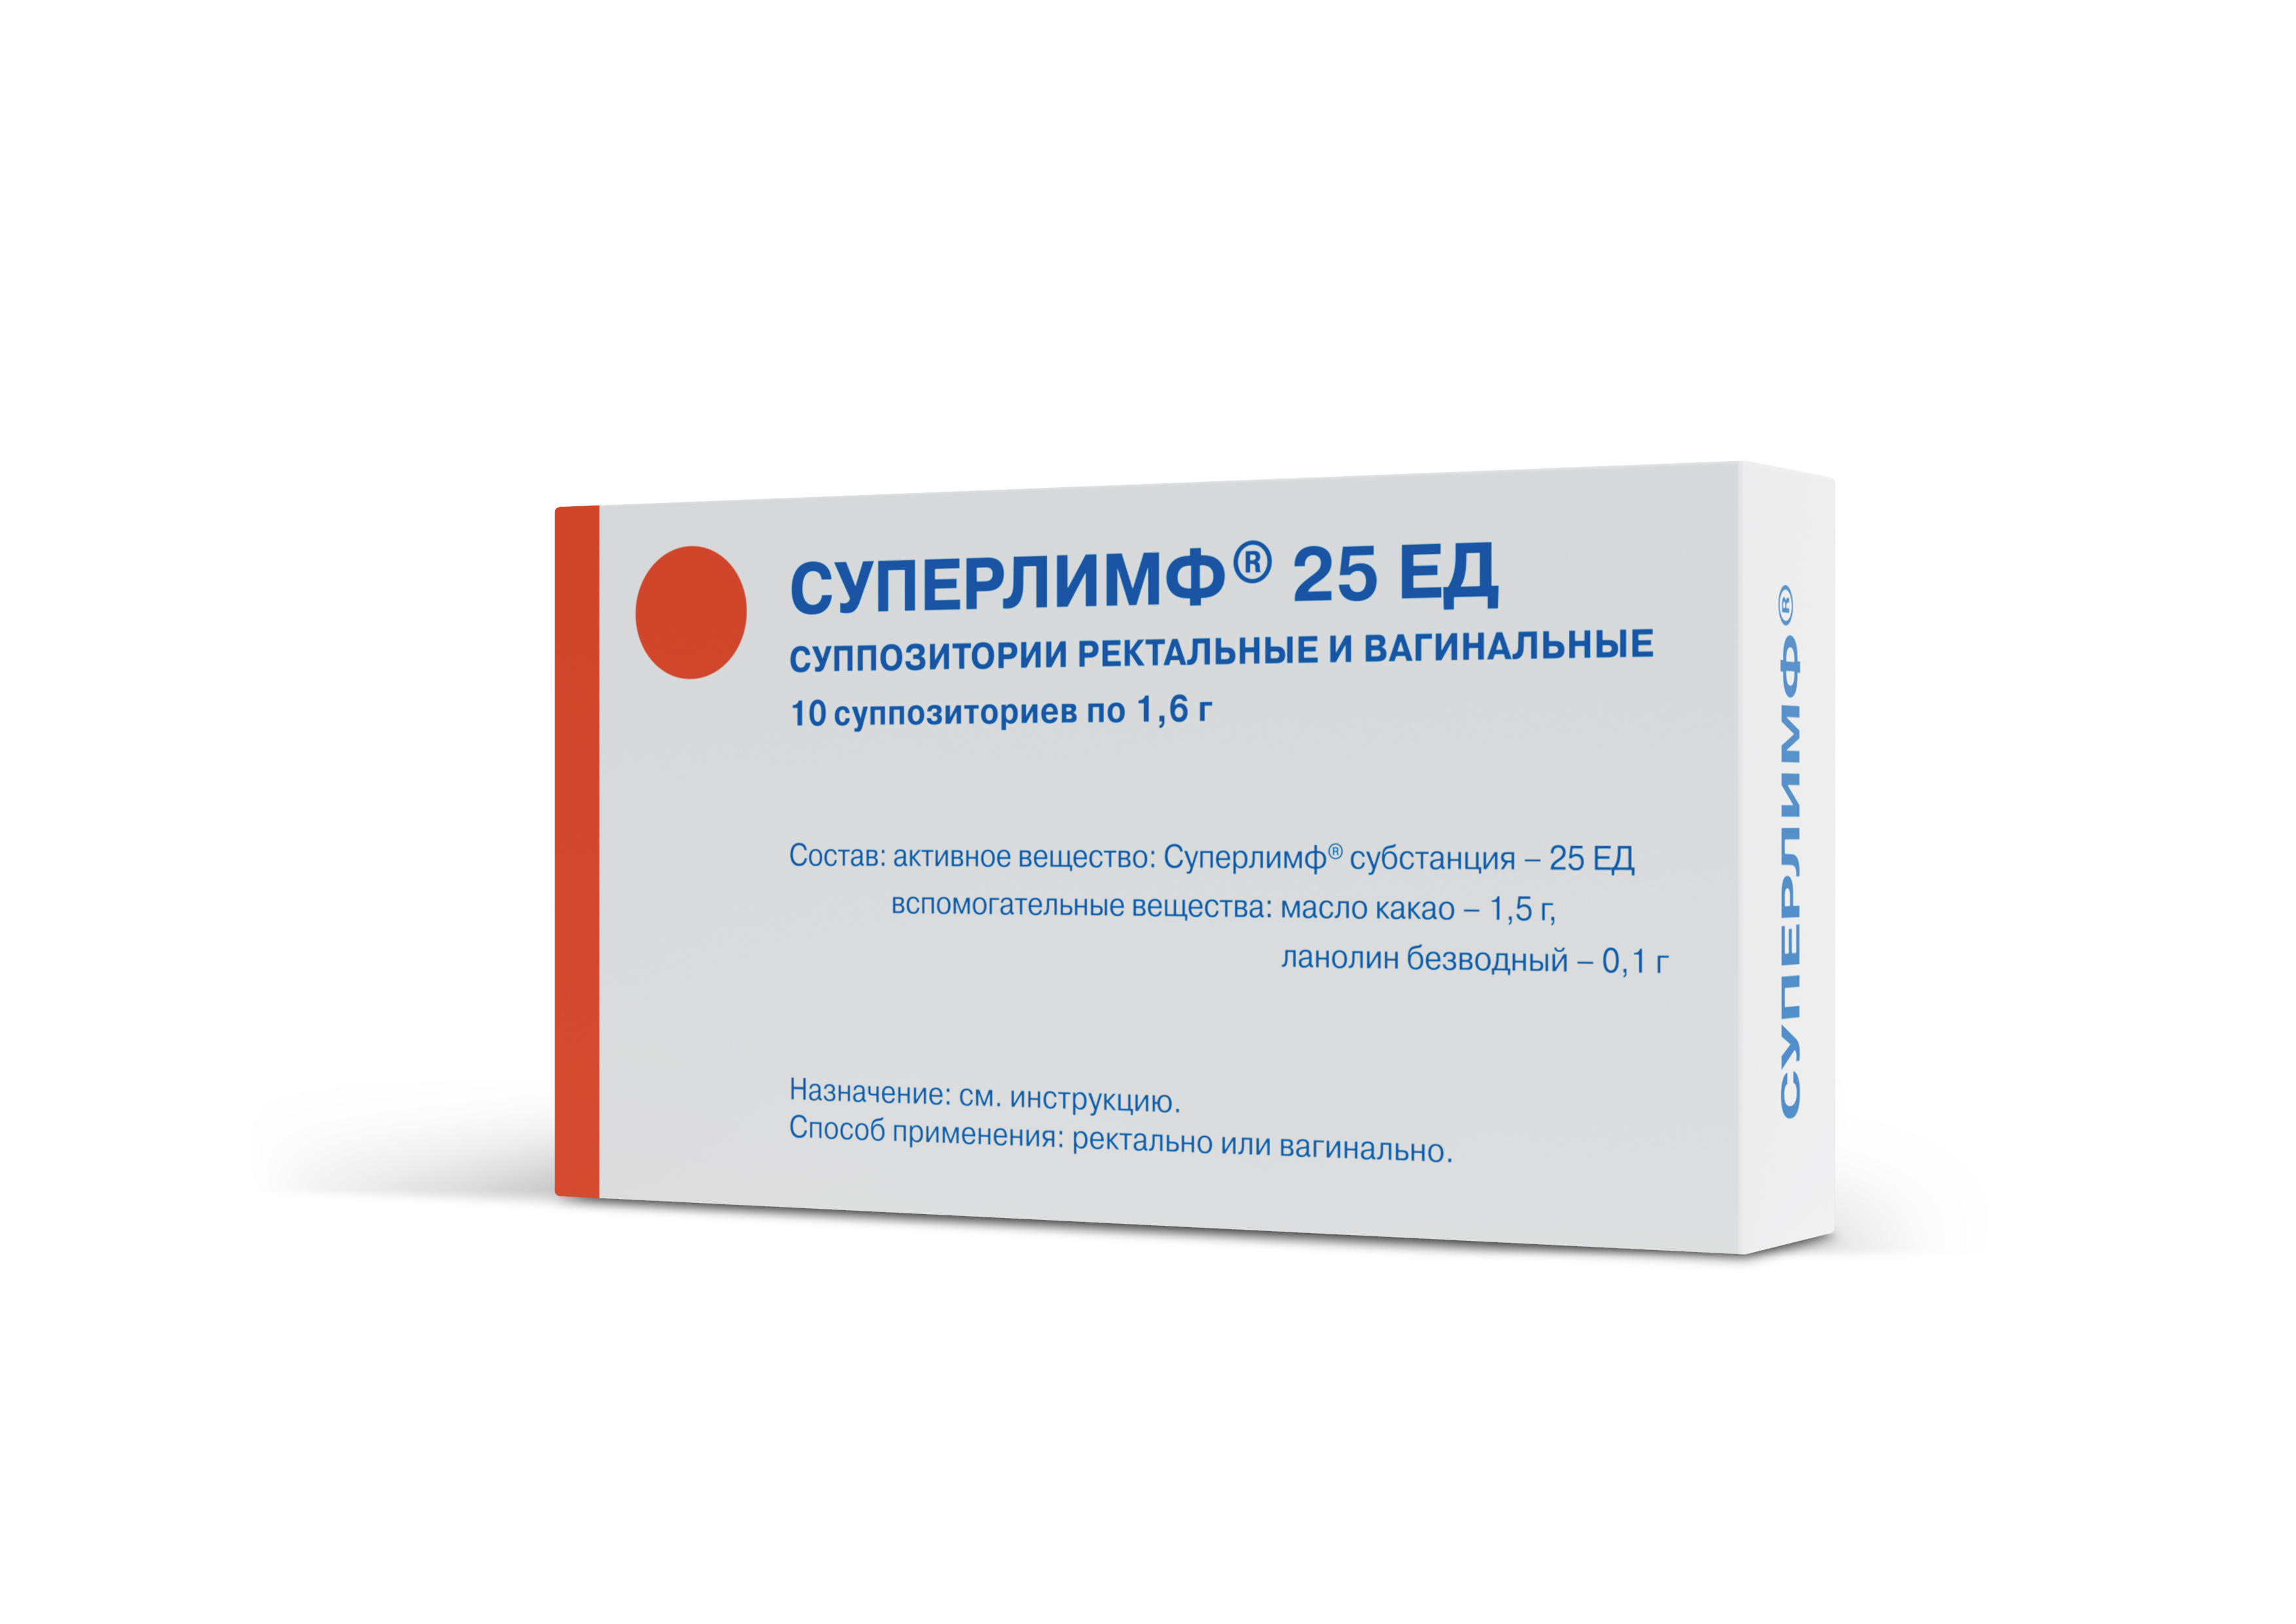 СУПЕРЛИМФ СУПП 25ЕД 1,6Г №10 цена от 1647.67  в аптеках Склад .